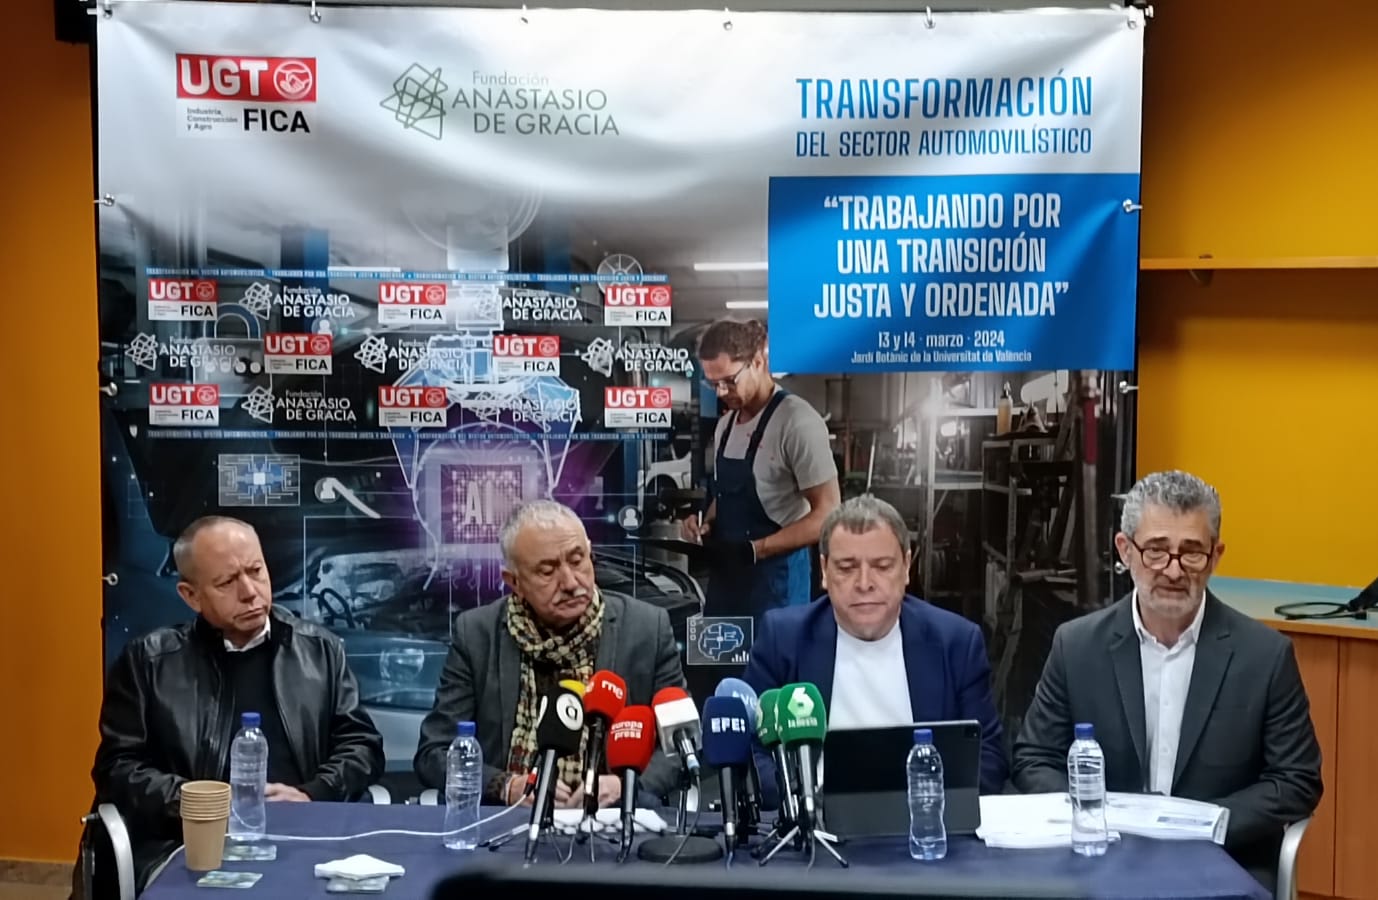 Mariano Hoya y Jordi Hereu clausuran mañana en Valencia las jornadas sobre “La Transformación del Sector Automovilístico